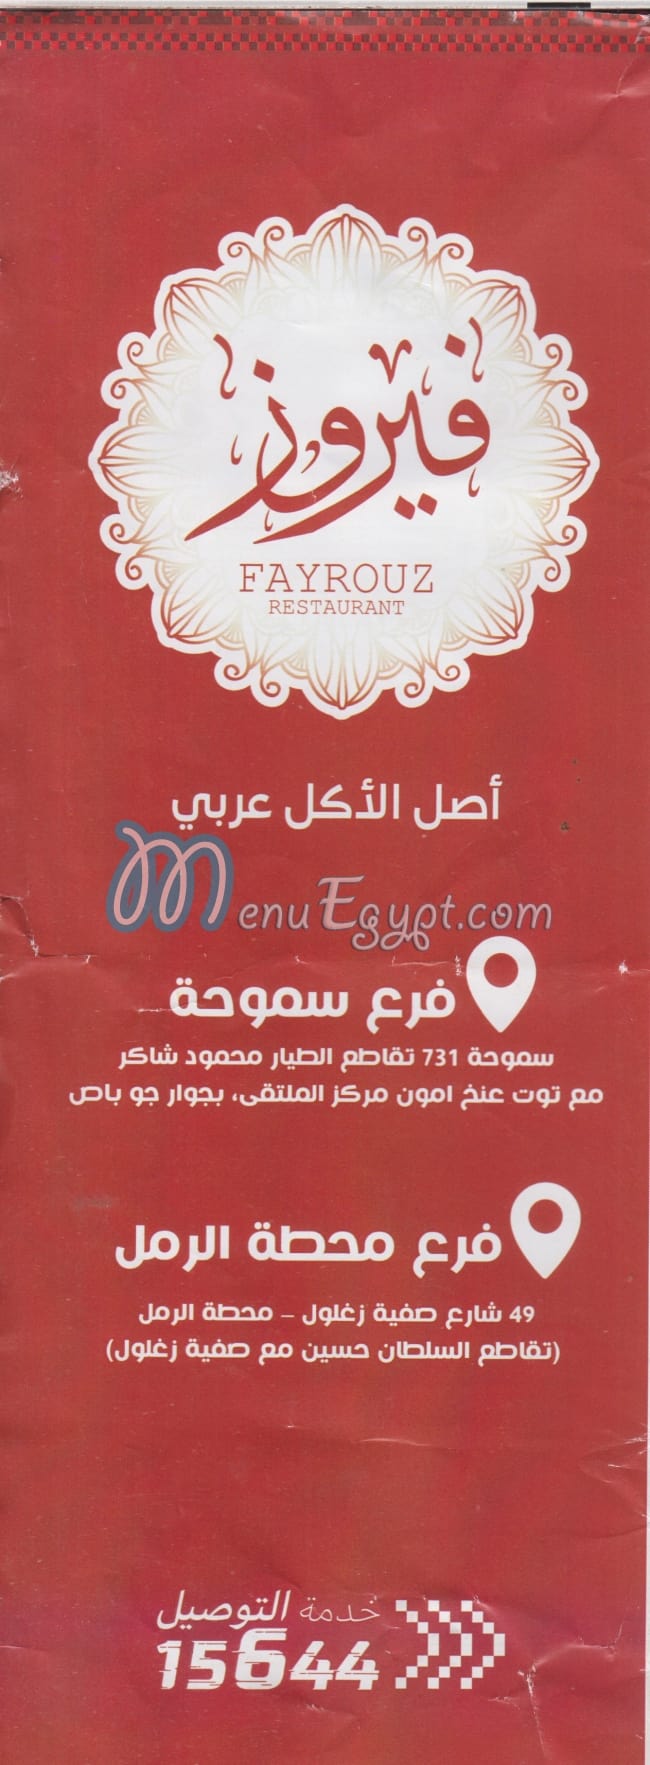 Fayrouz Grill menu